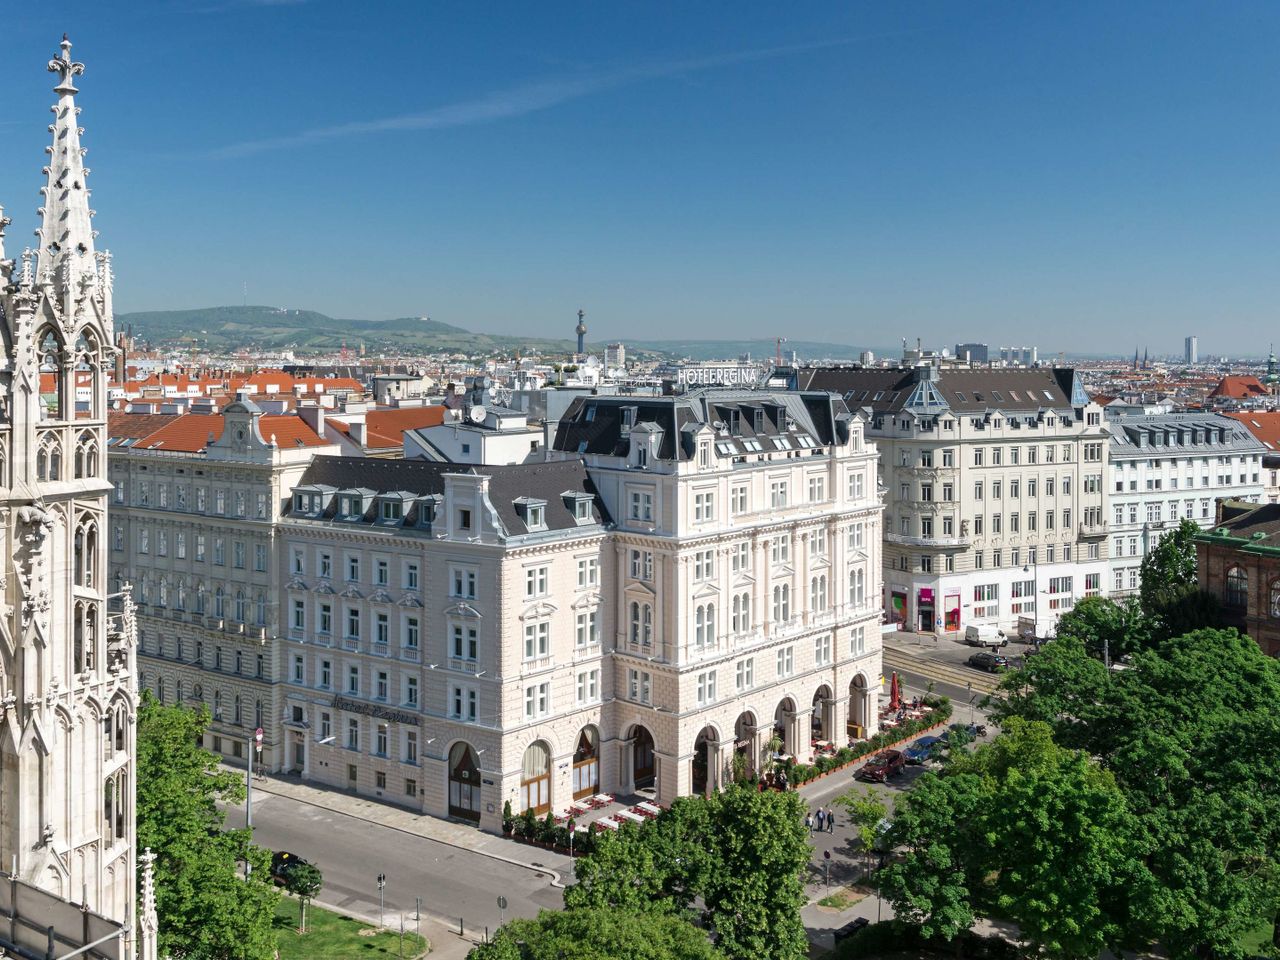 Das wunderschöne Wien erleben - 2 Tage